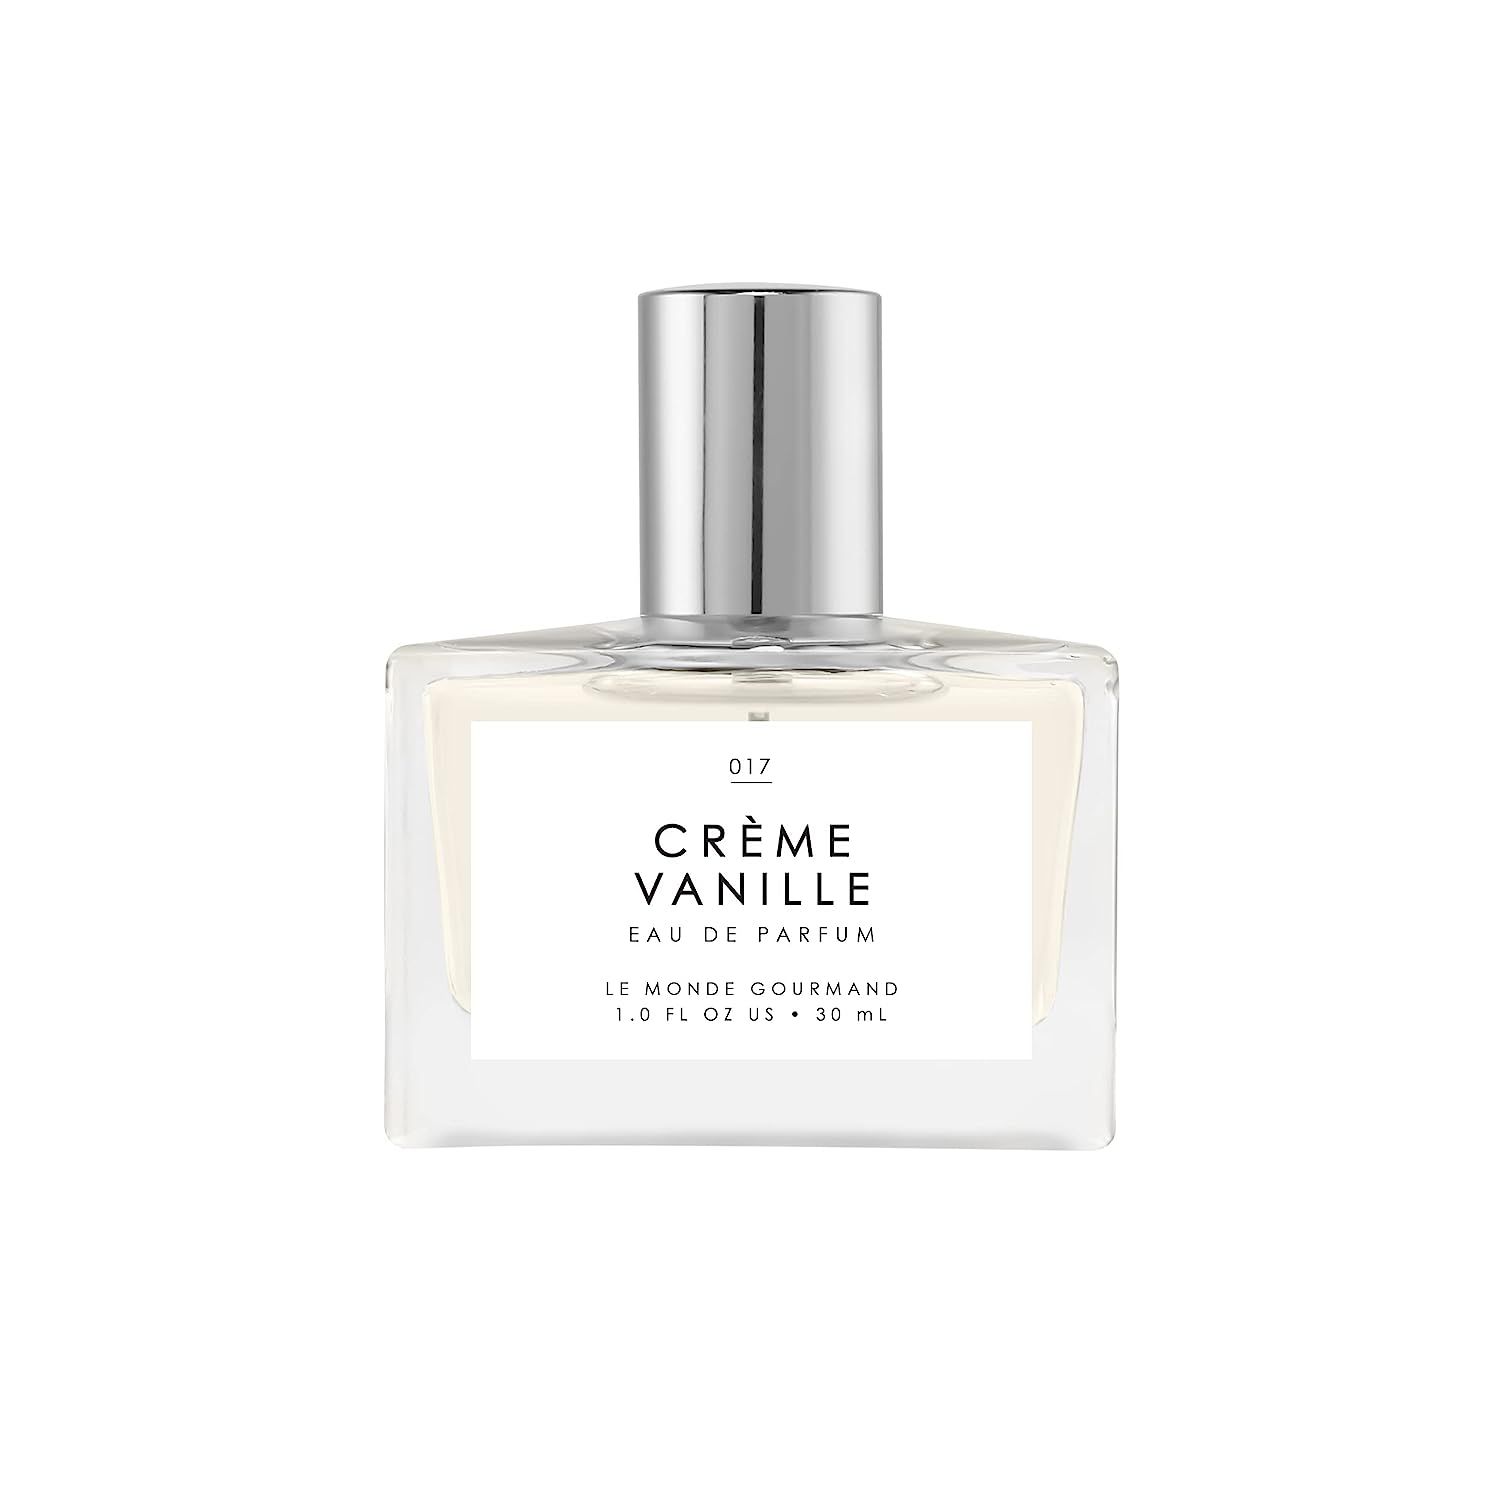 Le Monde Gourmand Crème Vanille Eau de Parfum - 1 fl oz | 30 ml | Amazon (US)